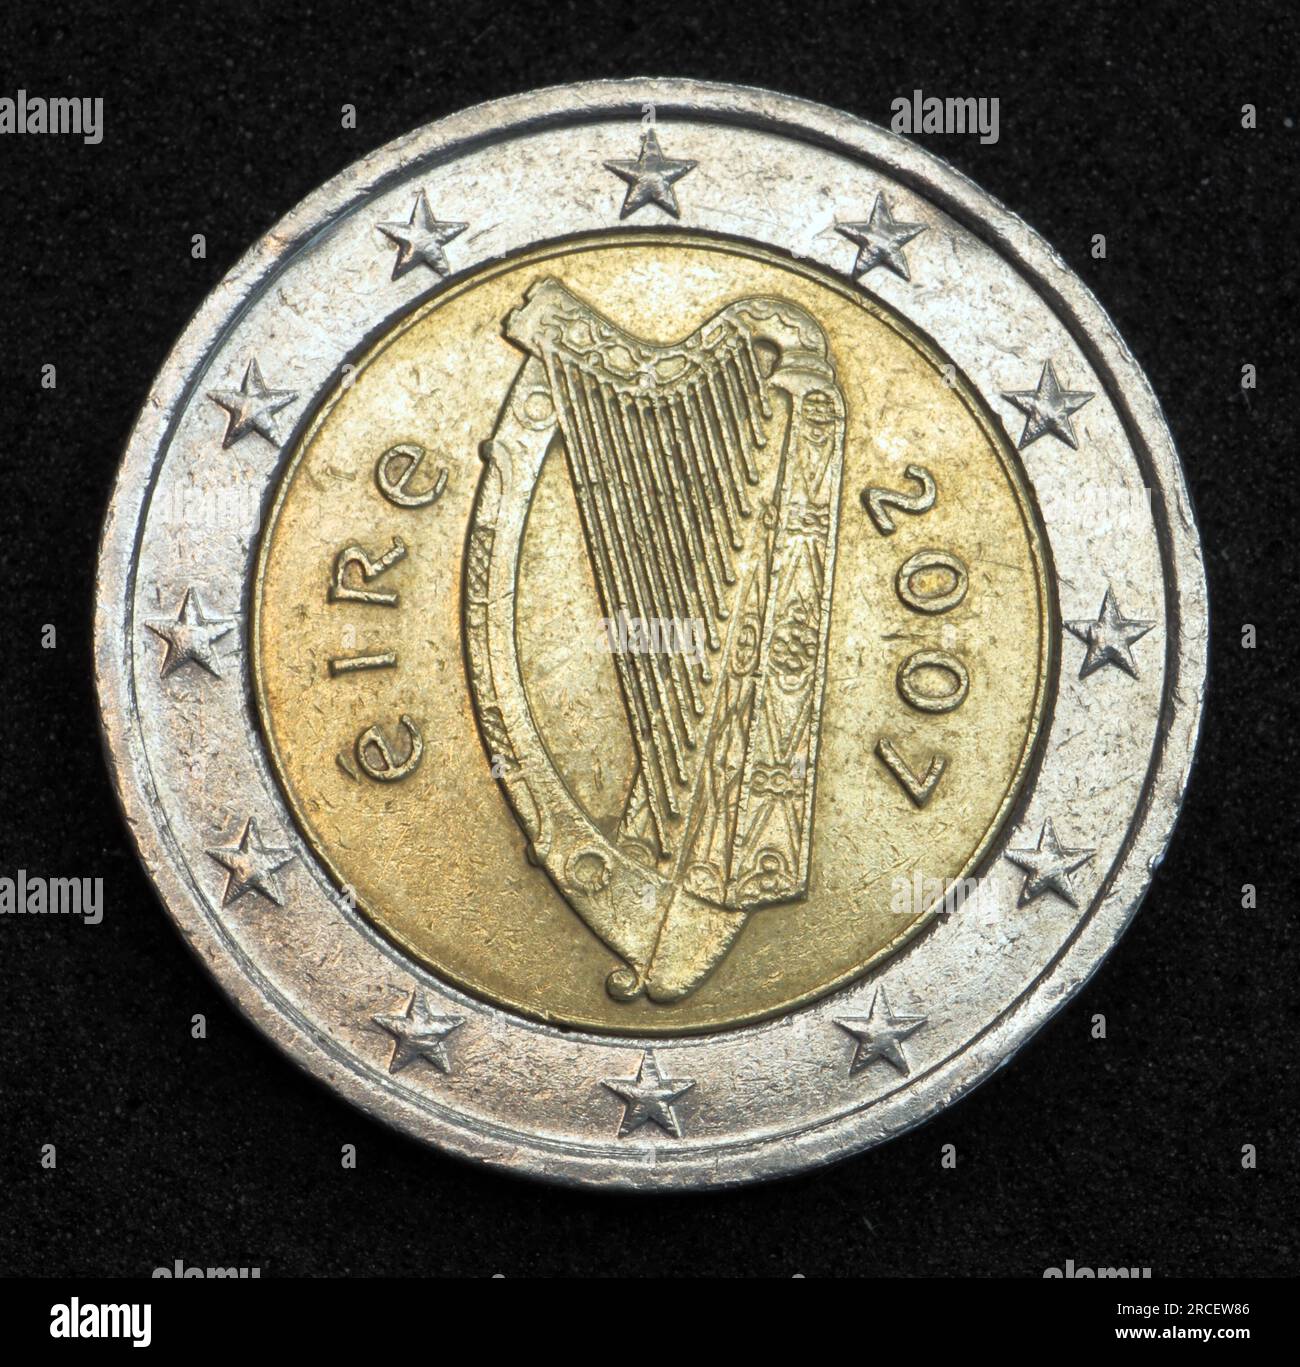 1 Euro Münzen aus Irland und Europa - auch die 2 Euro Münze ein